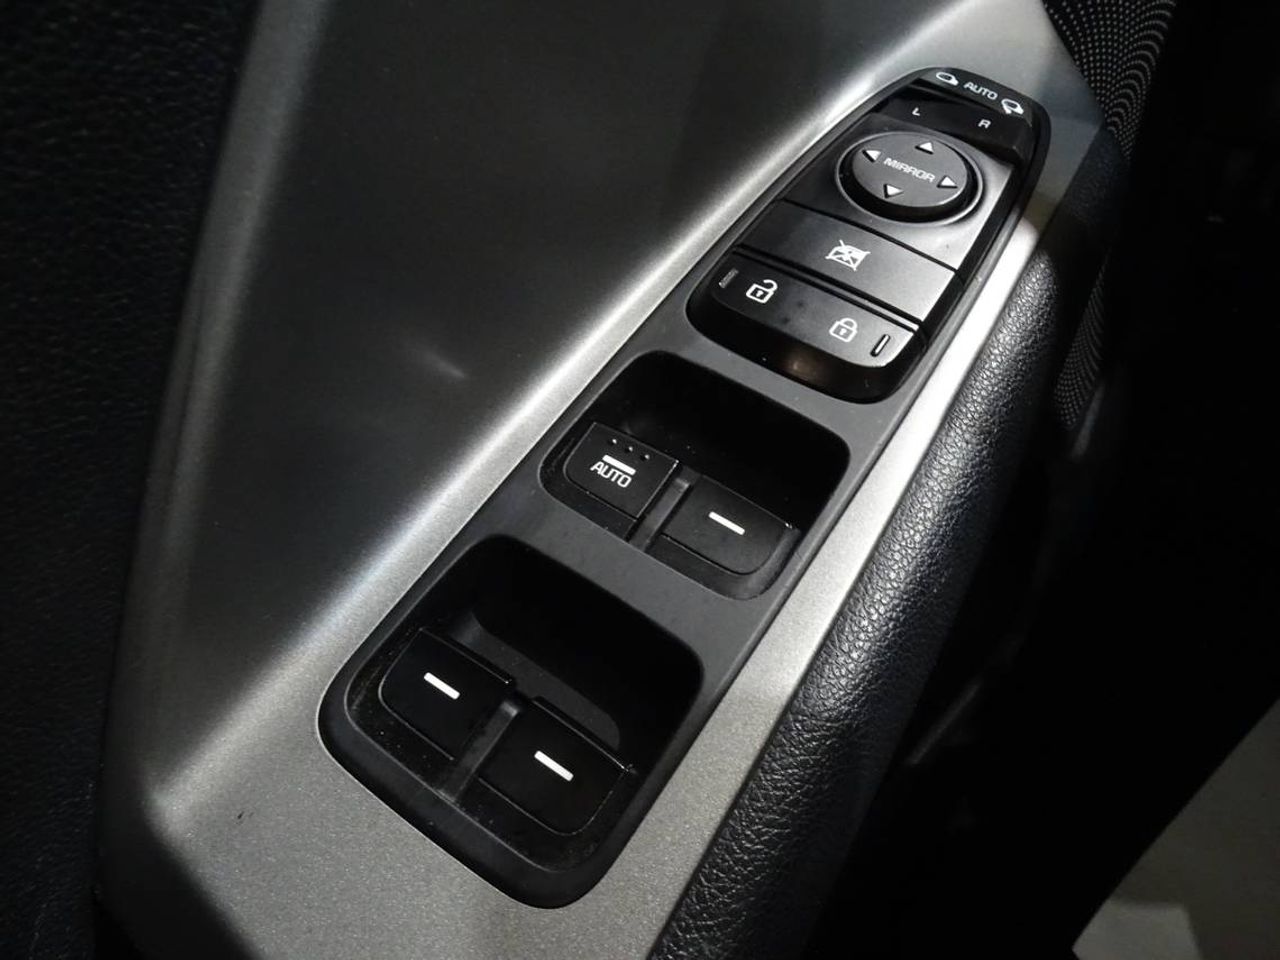 Kia Niro Drive 1.6 GDi Híbrido 104kW (141CV)  - Foto 2